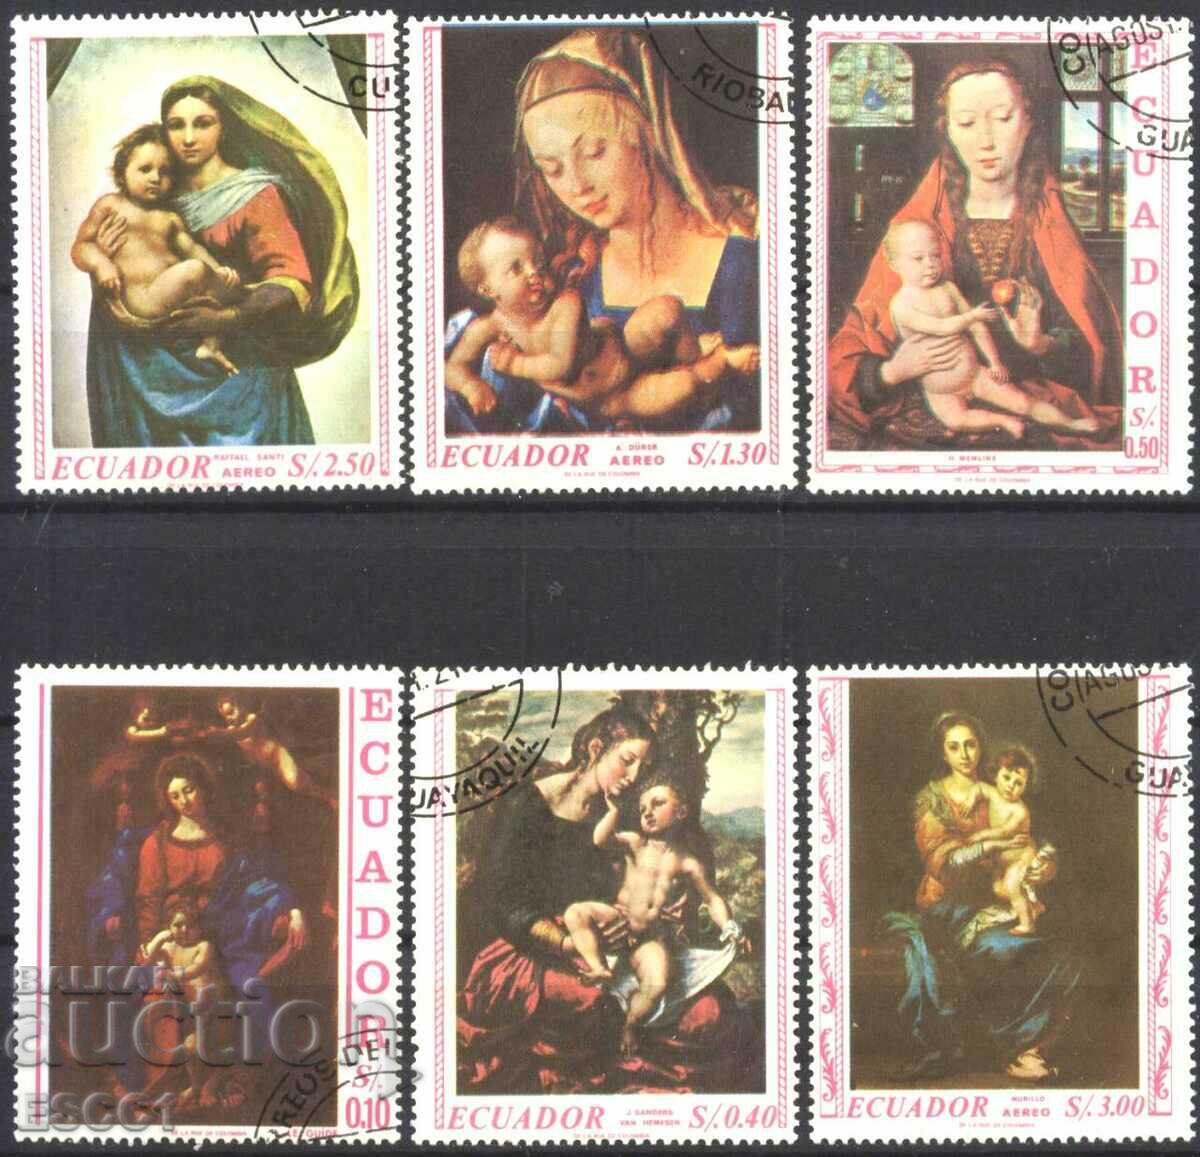 Σφραγισμένα γραμματόσημα Πίνακας 1967 από τον Ισημερινό